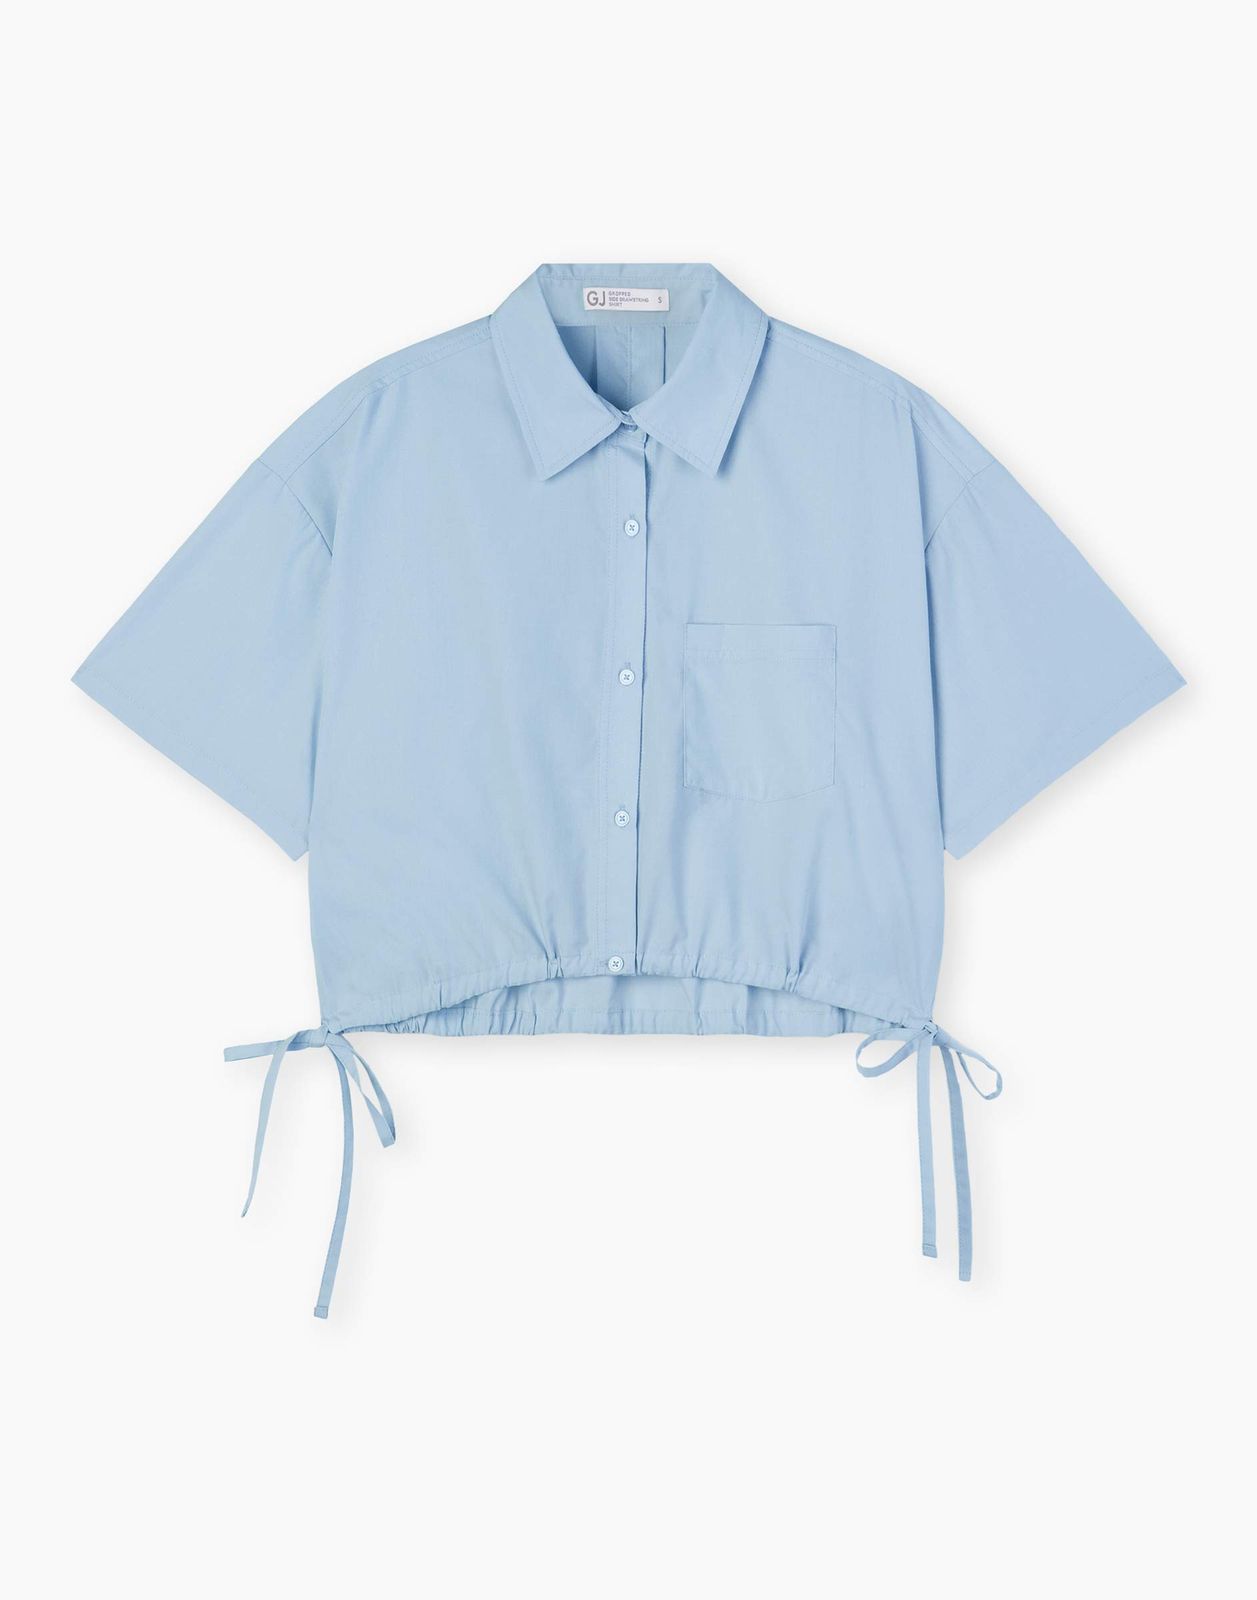 Рубашка женская Gloria Jeans GWT003620 голубой M/170